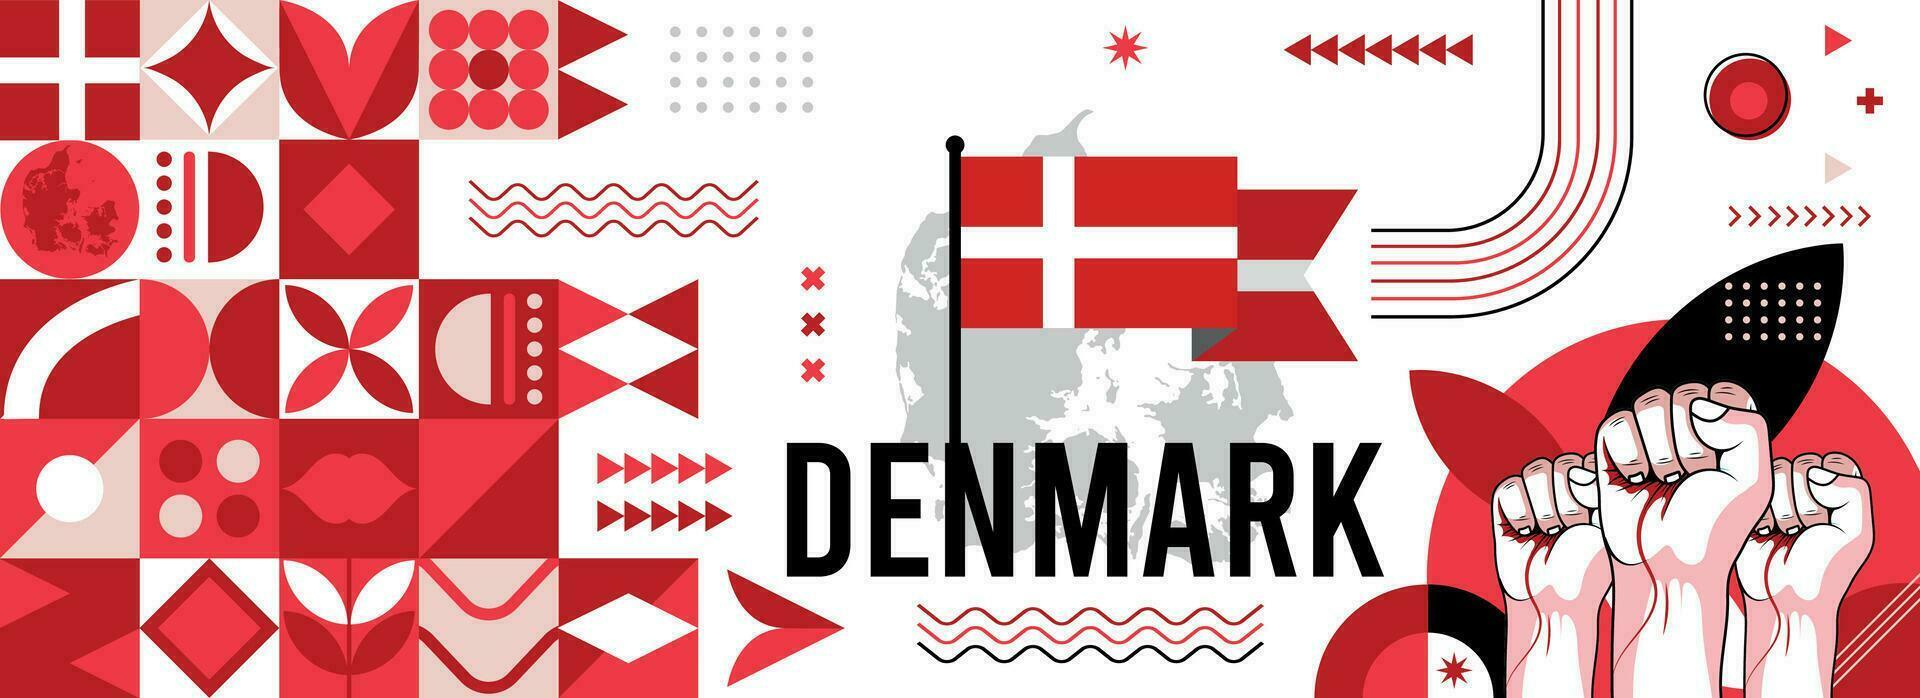 Danimarca nazionale o indipendenza giorno bandiera per nazione celebrazione. bandiera e carta geografica di Danimarca con sollevato pugni. moderno retrò design con typorgaphy astratto geometrico icone. vettore illustrazione.